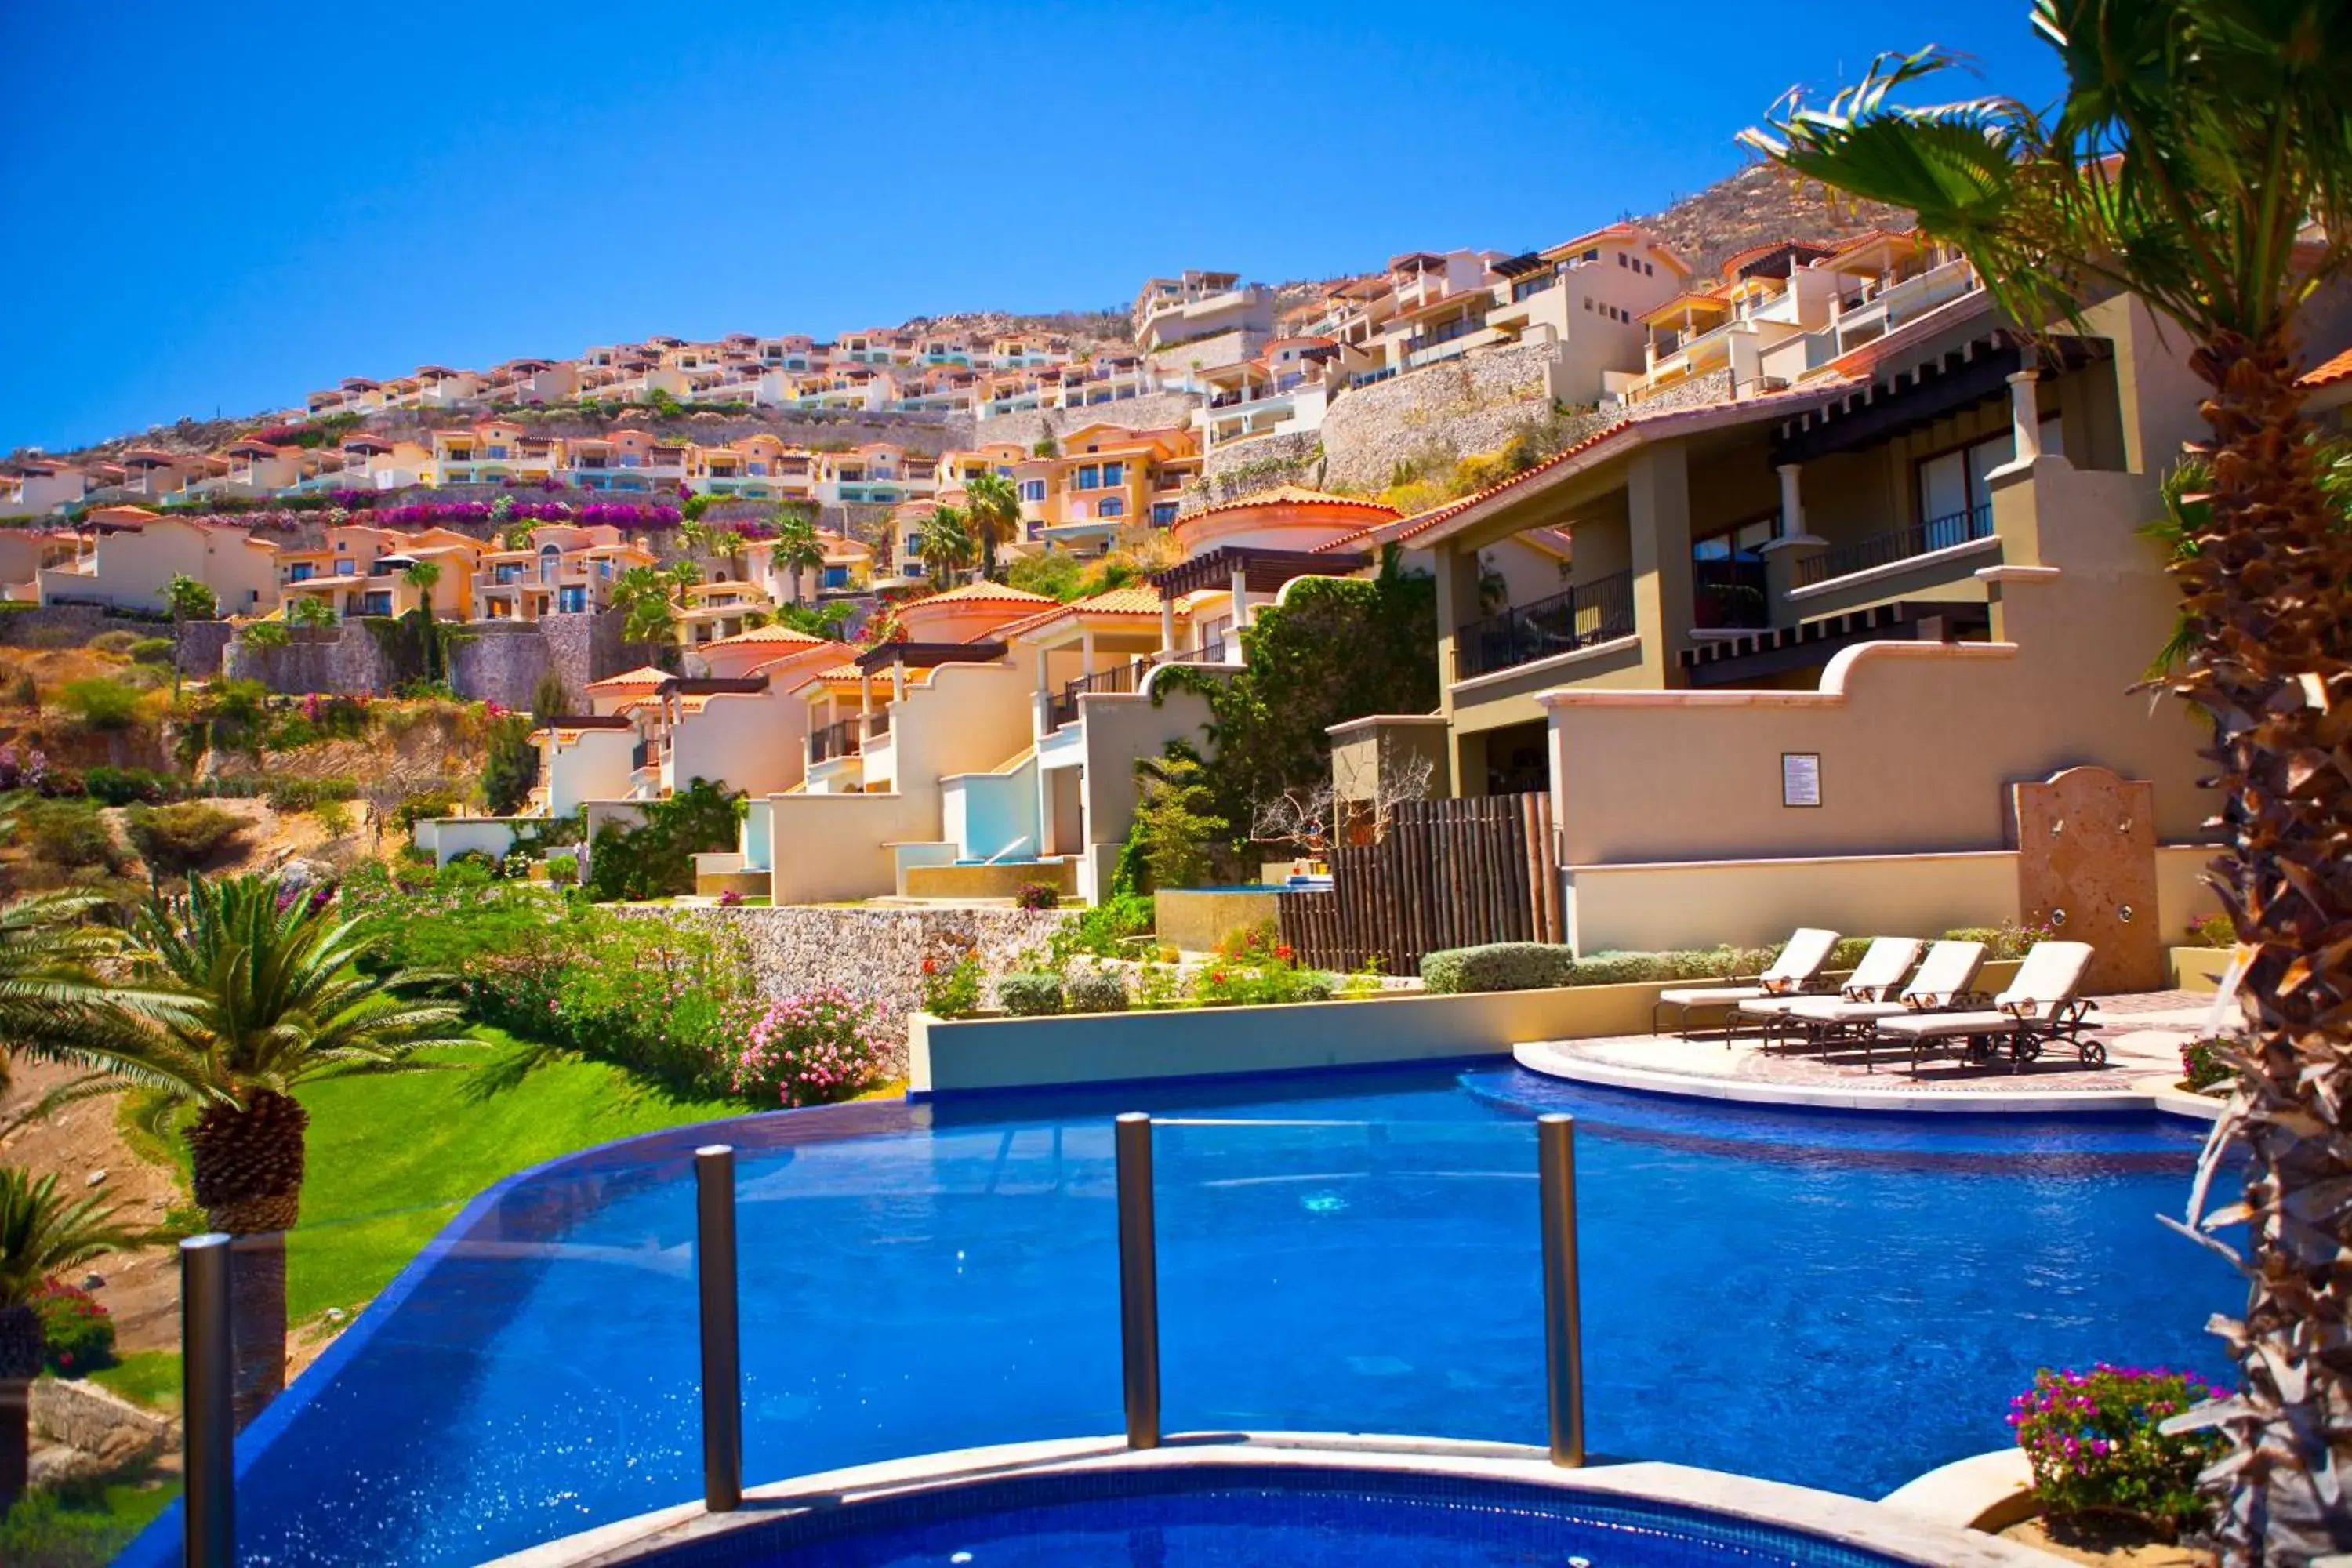 Swimming pool, Pool View in Pueblo Bonito Montecristo Luxury Villas - All Inclusive